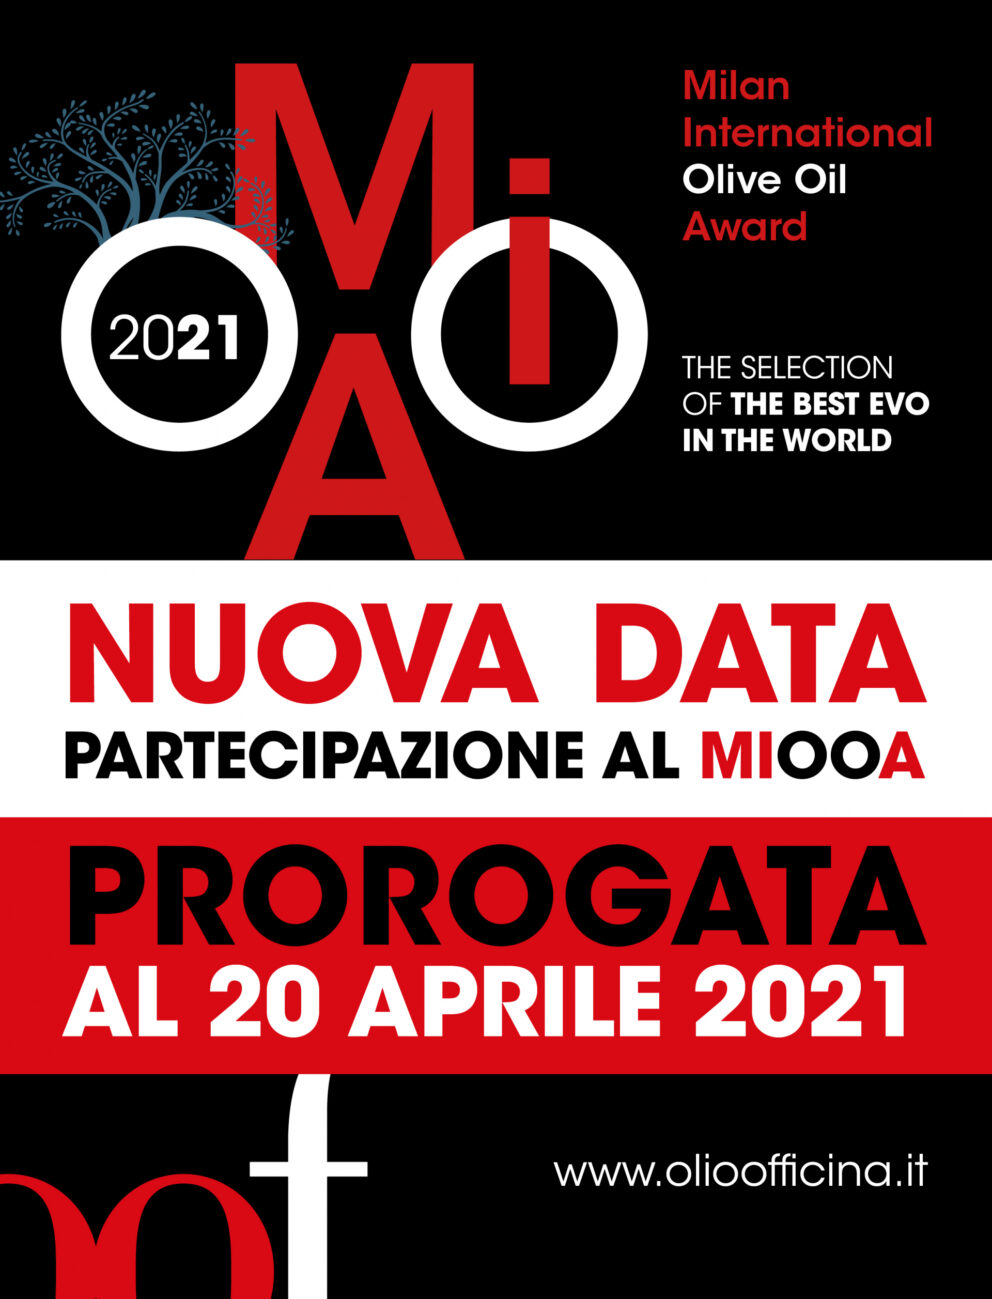 C’è tempo fino al 20 aprile per inviare gli oli in concorso al Milan International Olive Oil Award